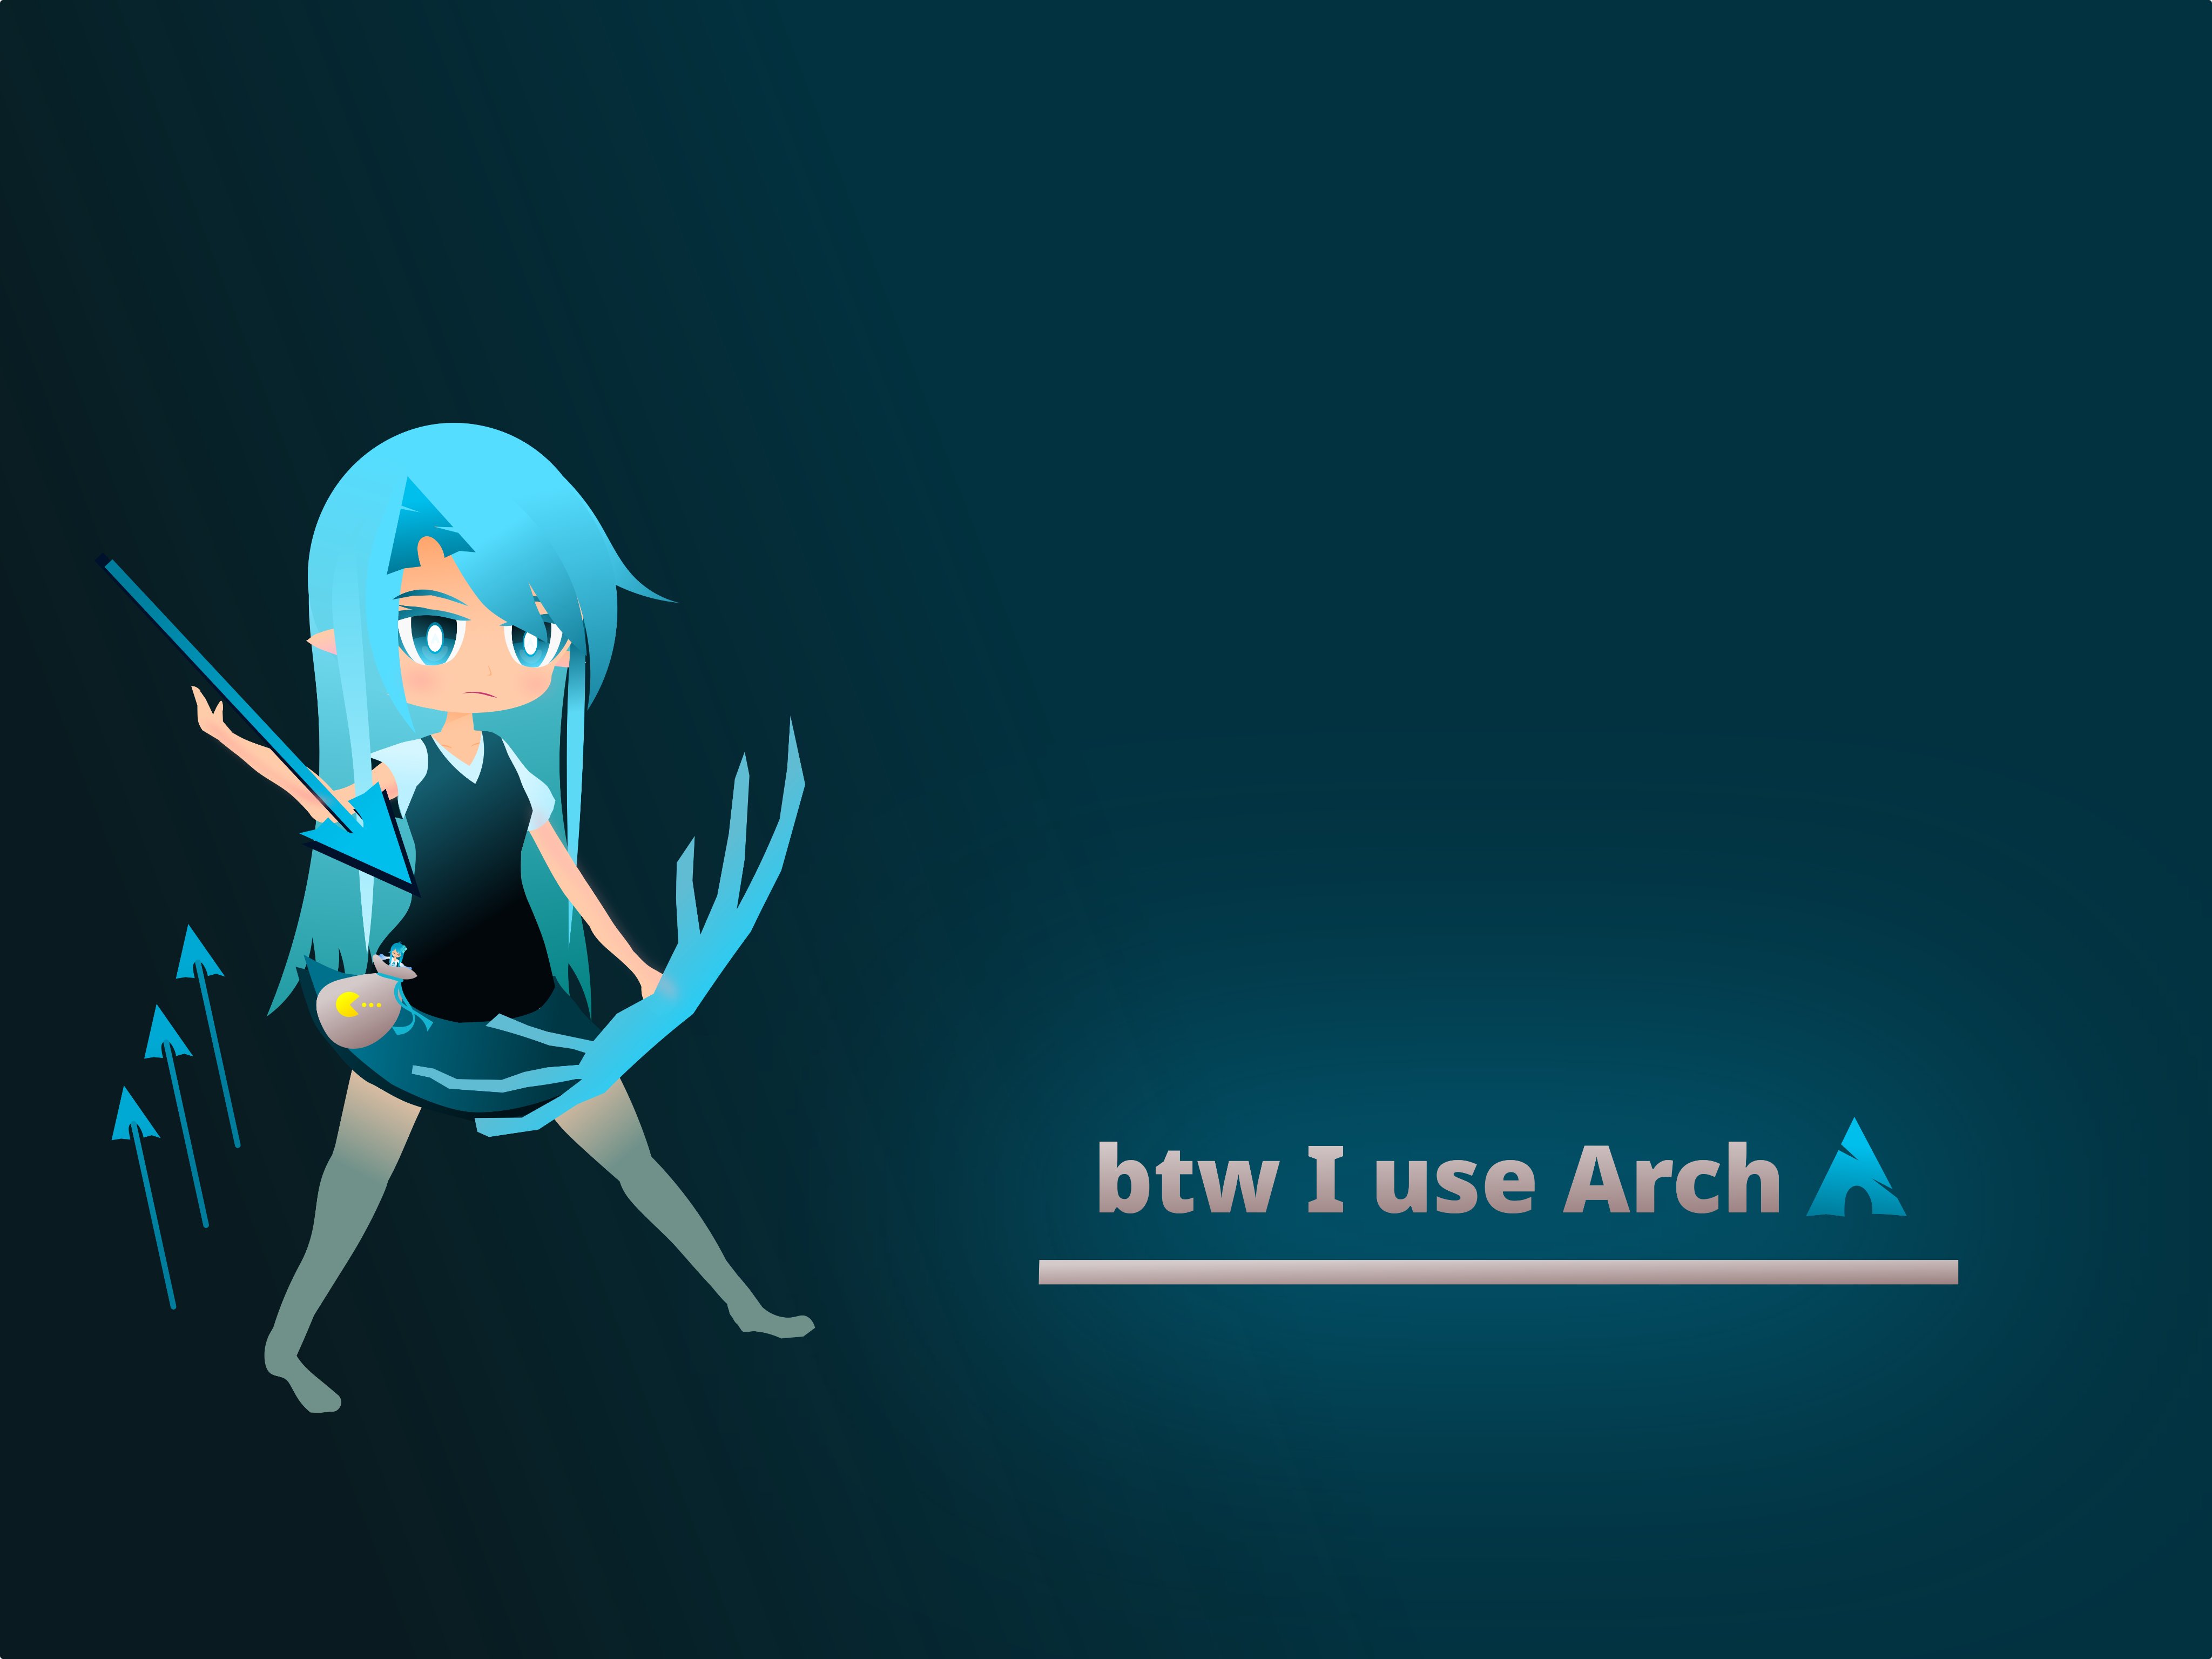 lian0123 linux chan wallpaper #Linux #擬人化 #ArchLinux # wallpaper #blue #bluehair #inkscape svg file